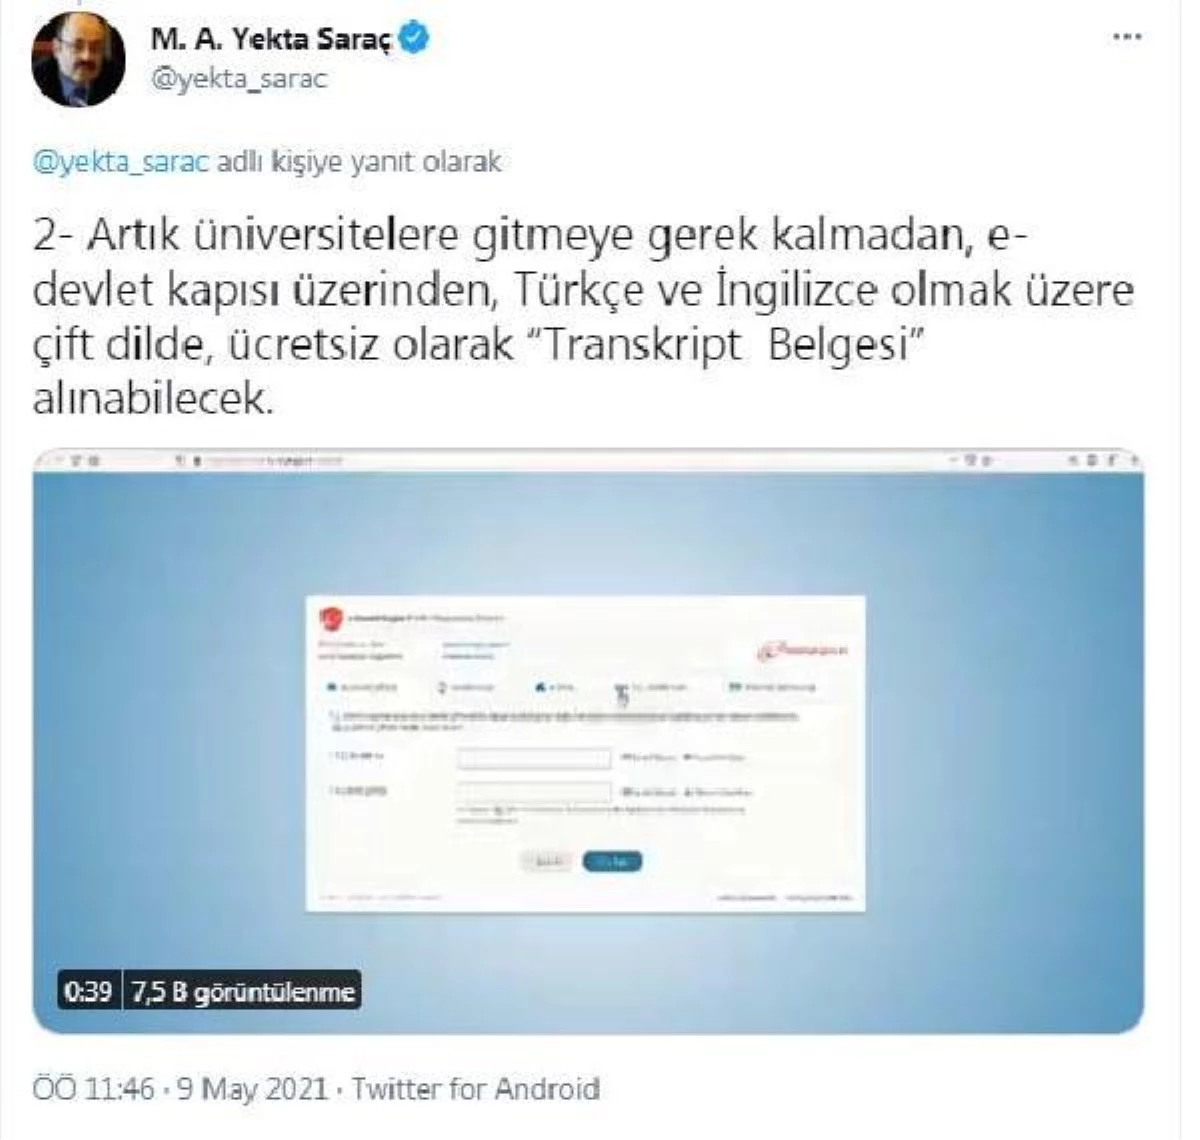 YÖK Başkanı Saraç: Transkript  Belgesi, e-devlet kapısı üzerinden alınabilecek